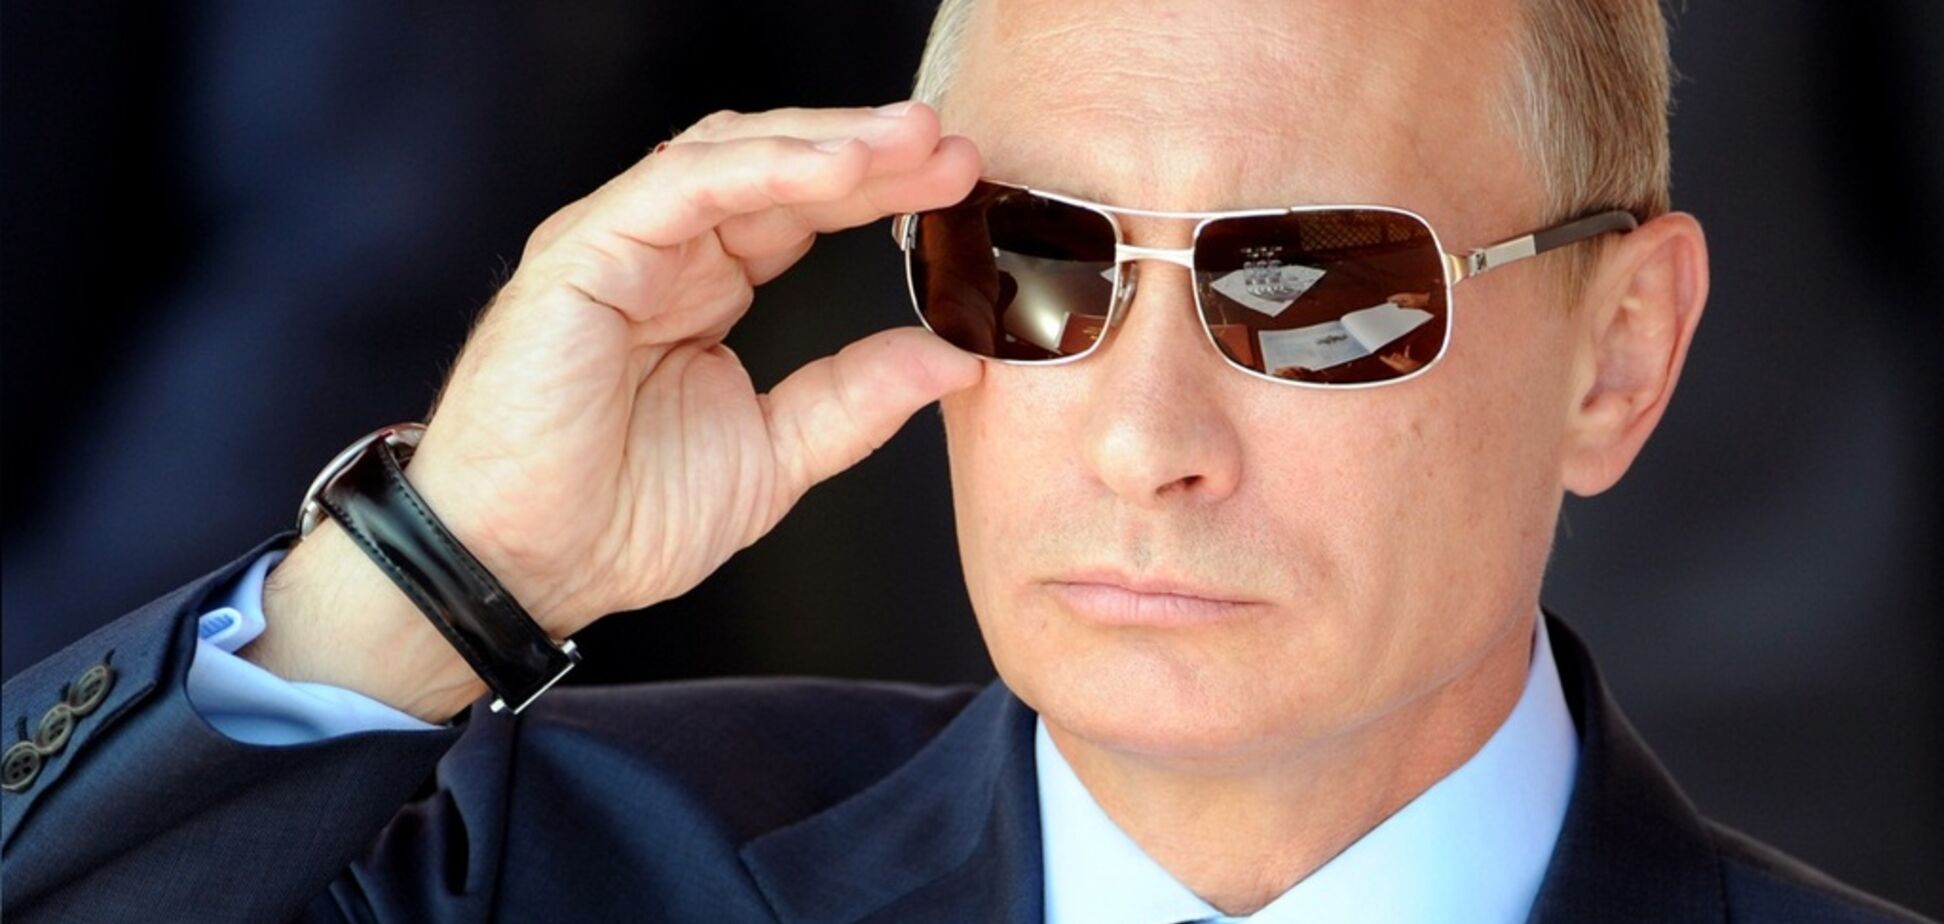 Момент истины: Путин не посмеет ослушаться